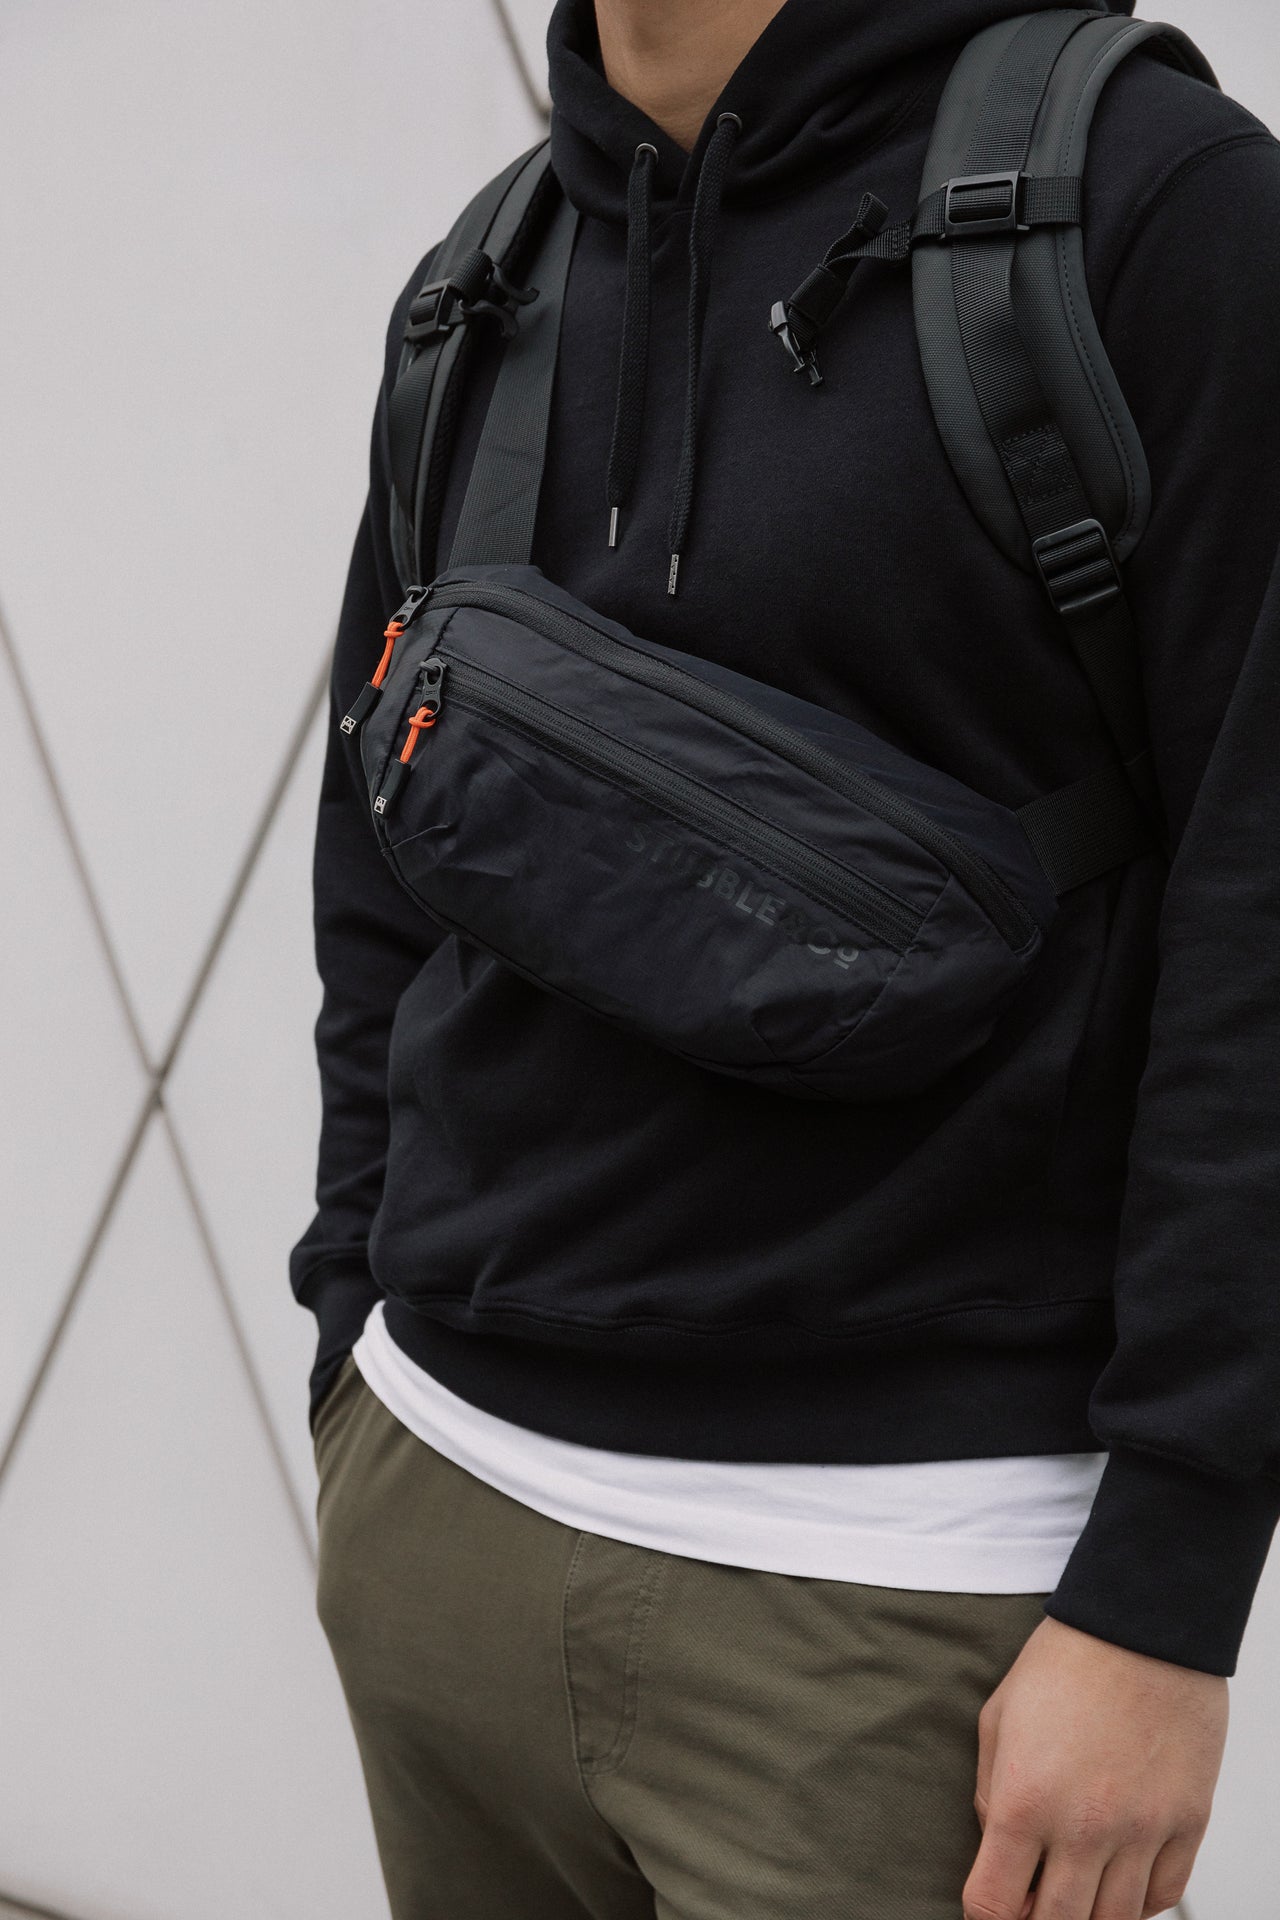 A man wearing an All Black Ultra Light packable sling